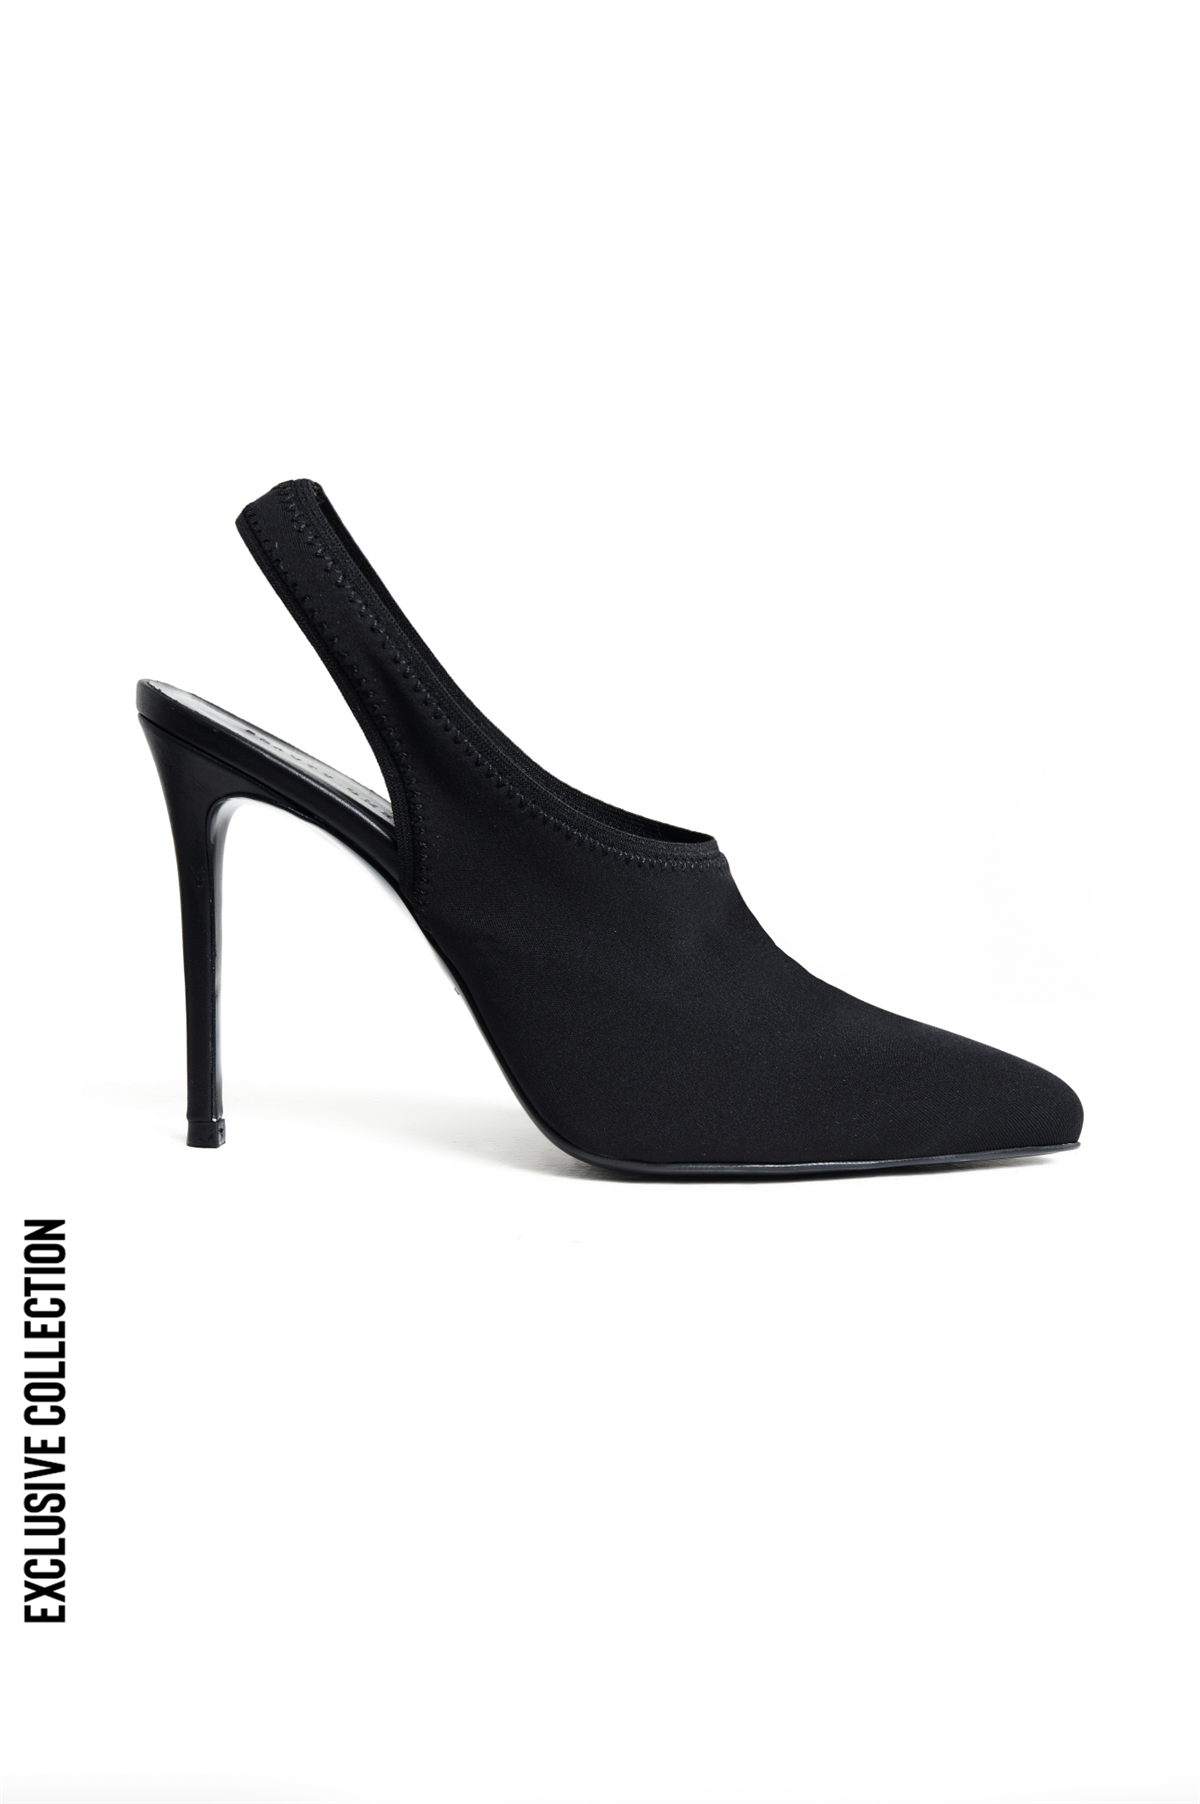 Siyah Streç Form Topuklu Ayakkabı - Exclusive Collection